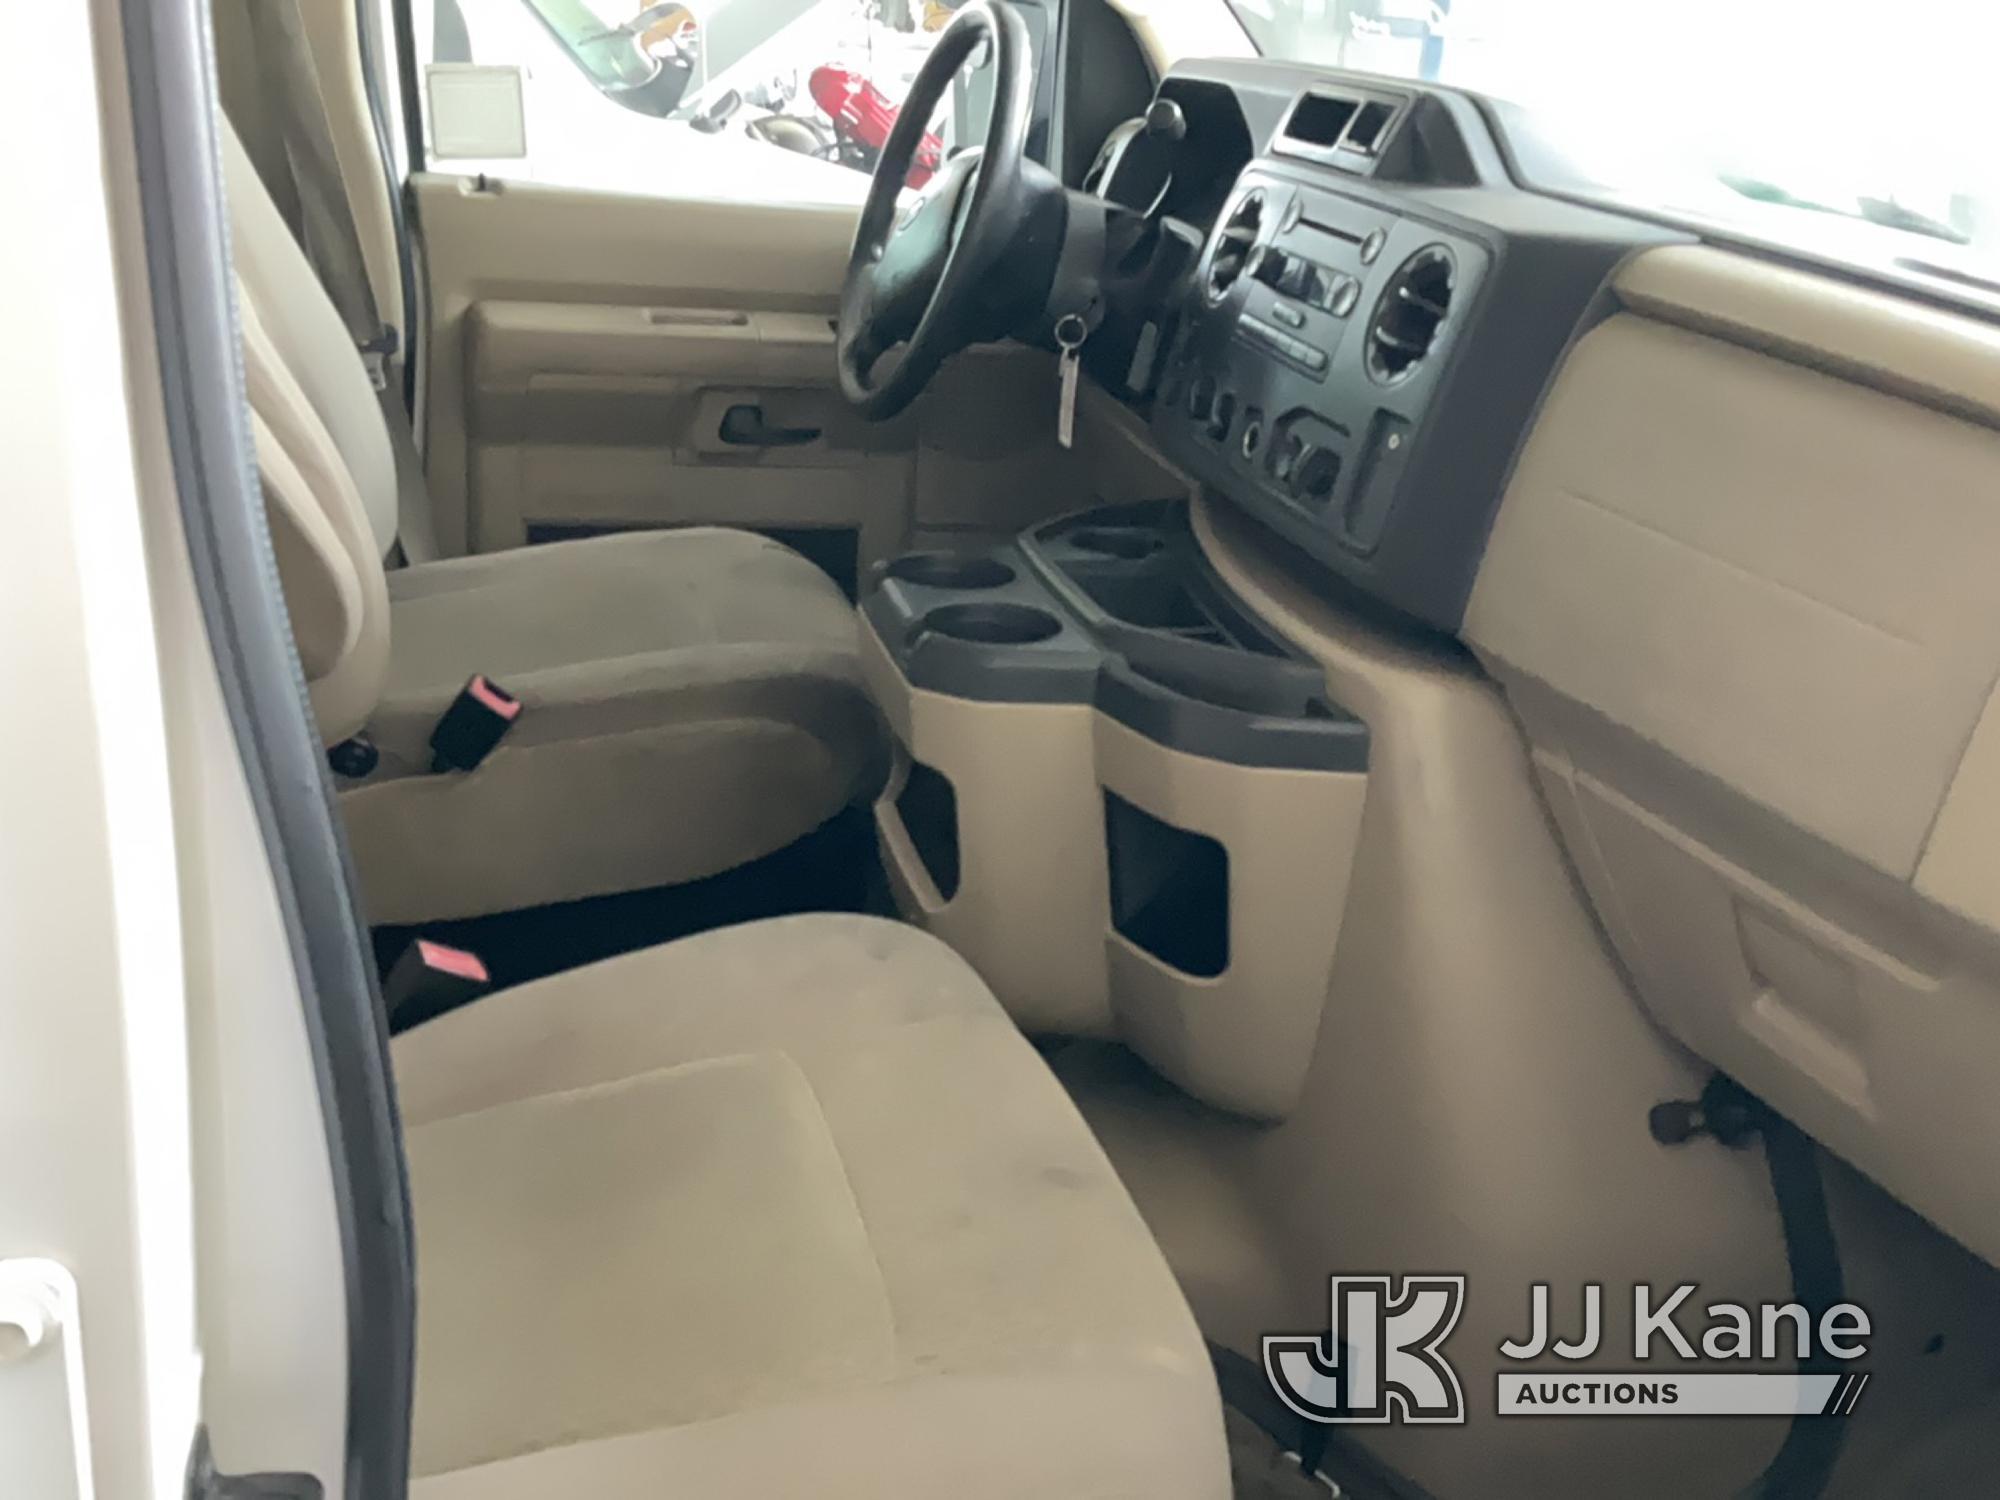 (Jurupa Valley, CA) 2011 Ford E150 XLT Passenger Van Runs & Moves